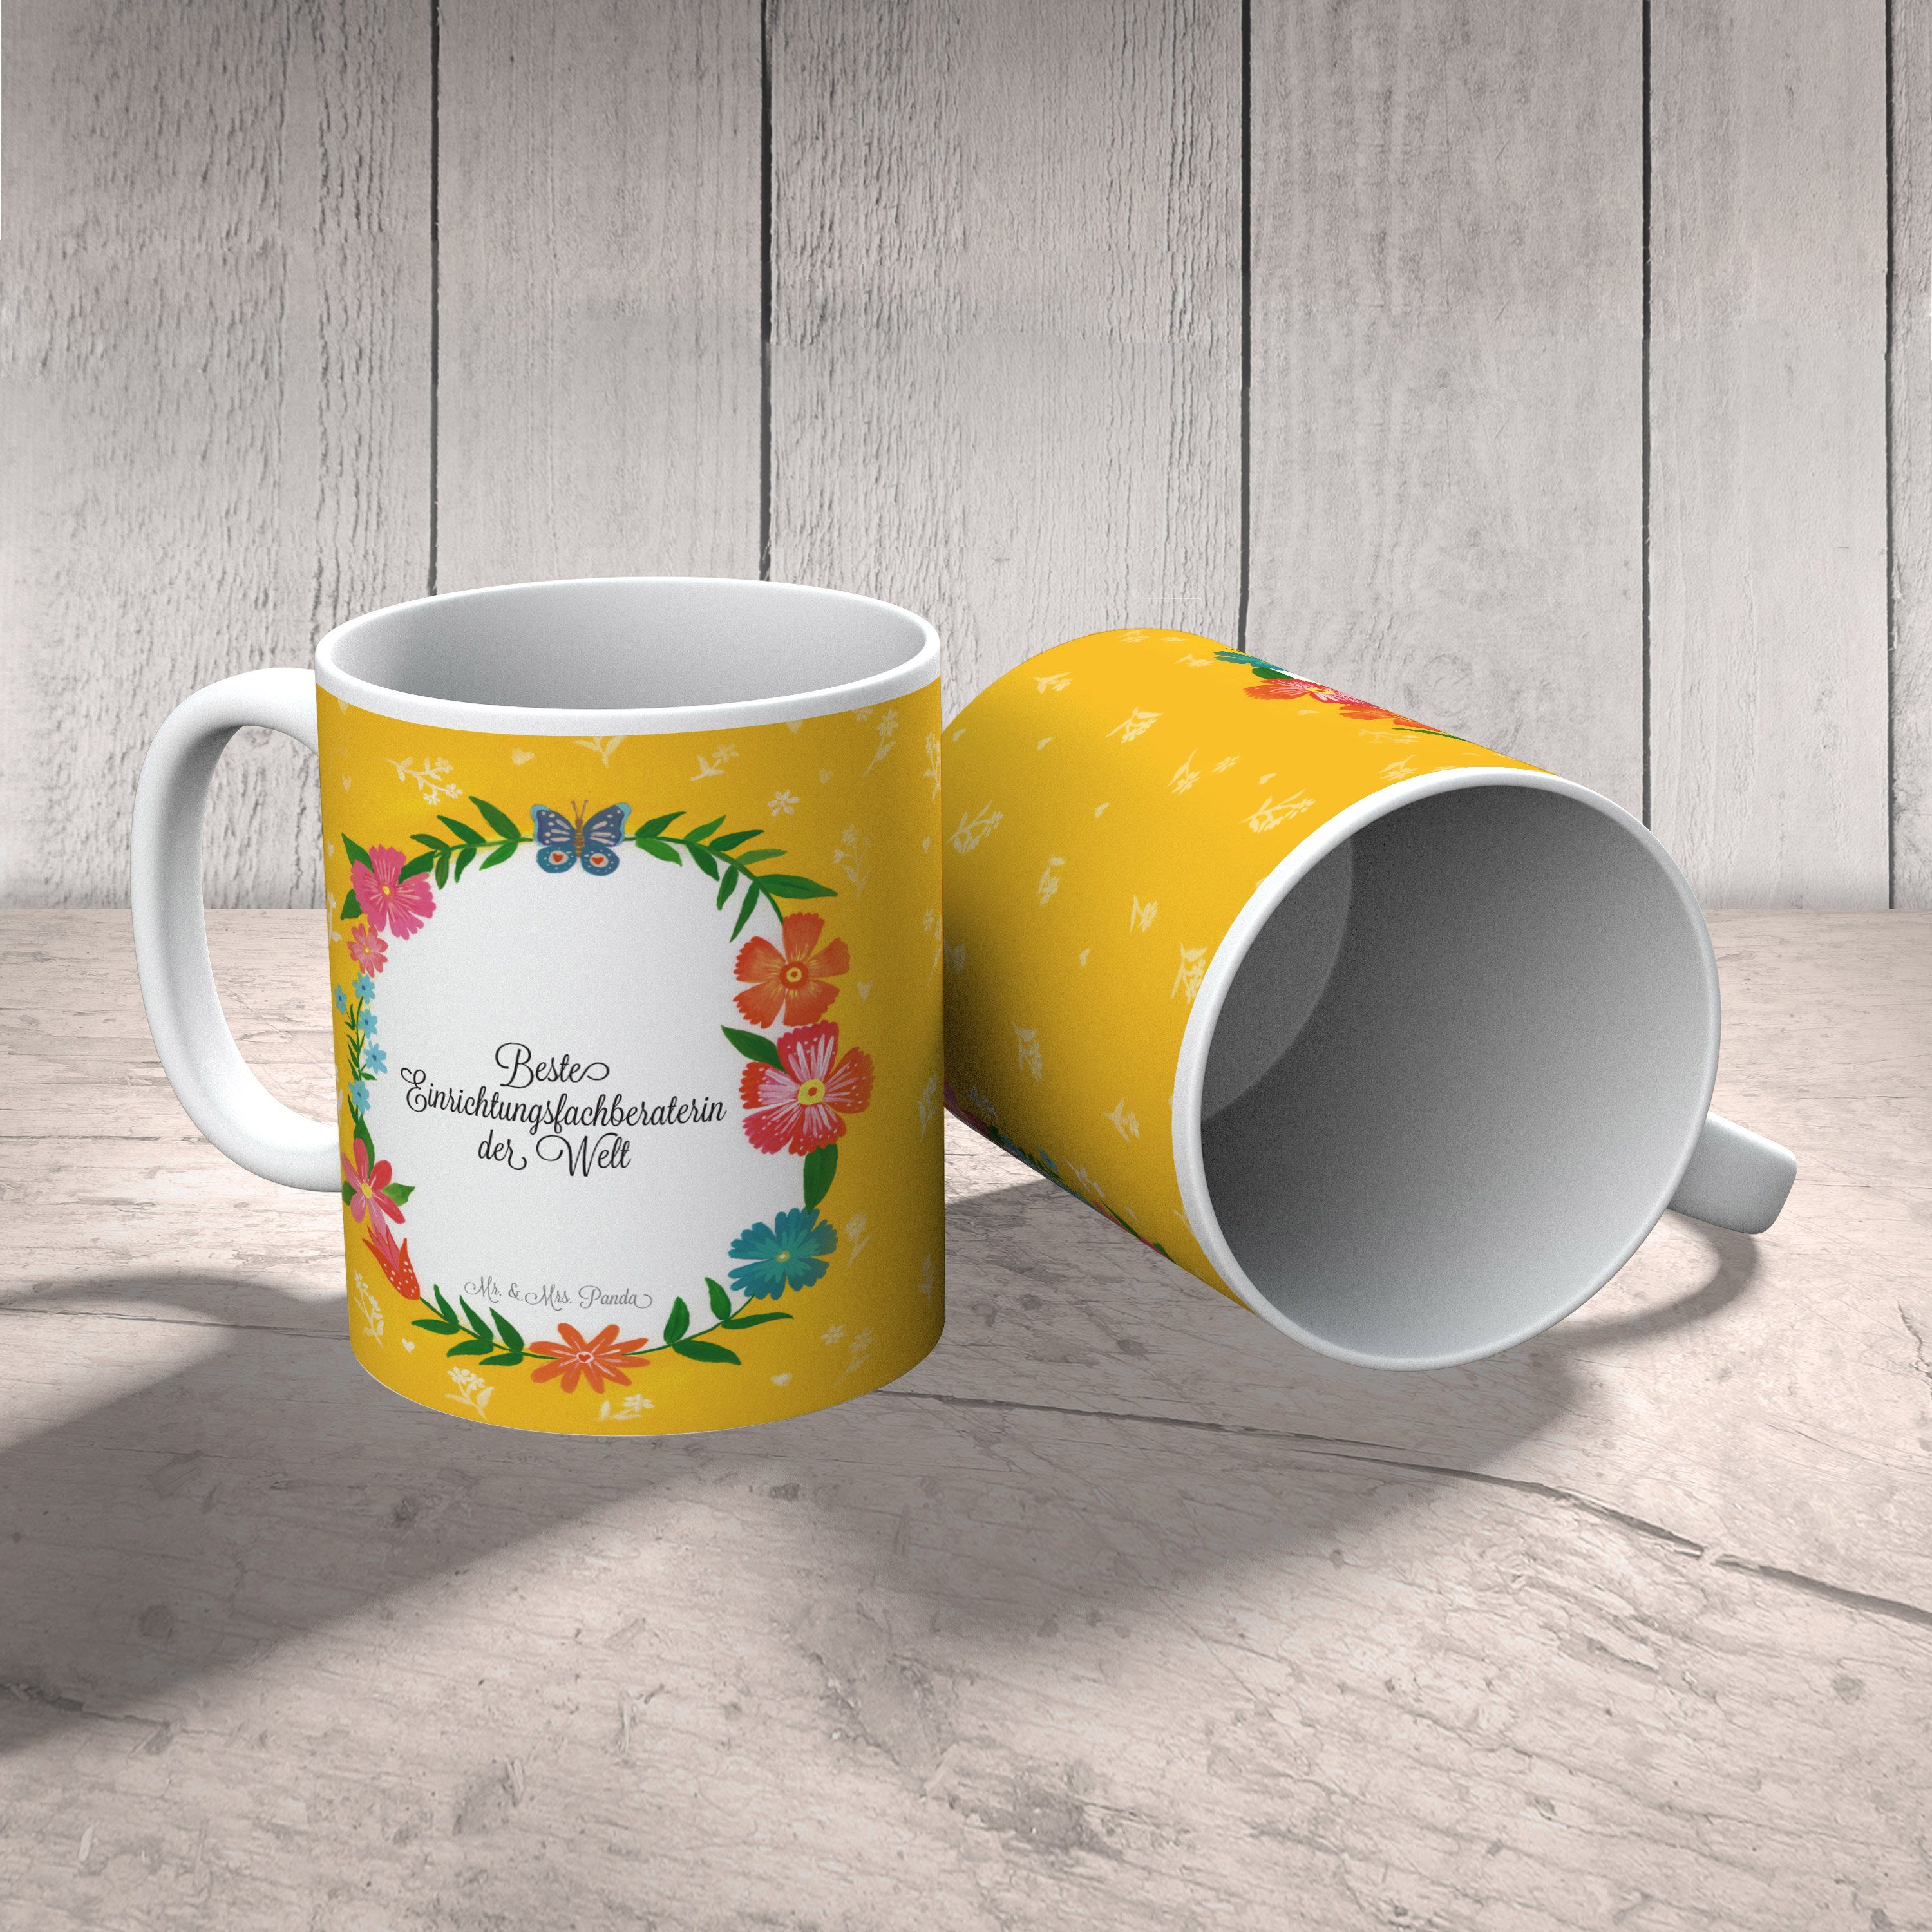 Mr. & Mrs. Panda Tasse Tasse, Geschenk, Keramik Kaffeebecher, Ausbildung, - Einrichtungsfachberaterin